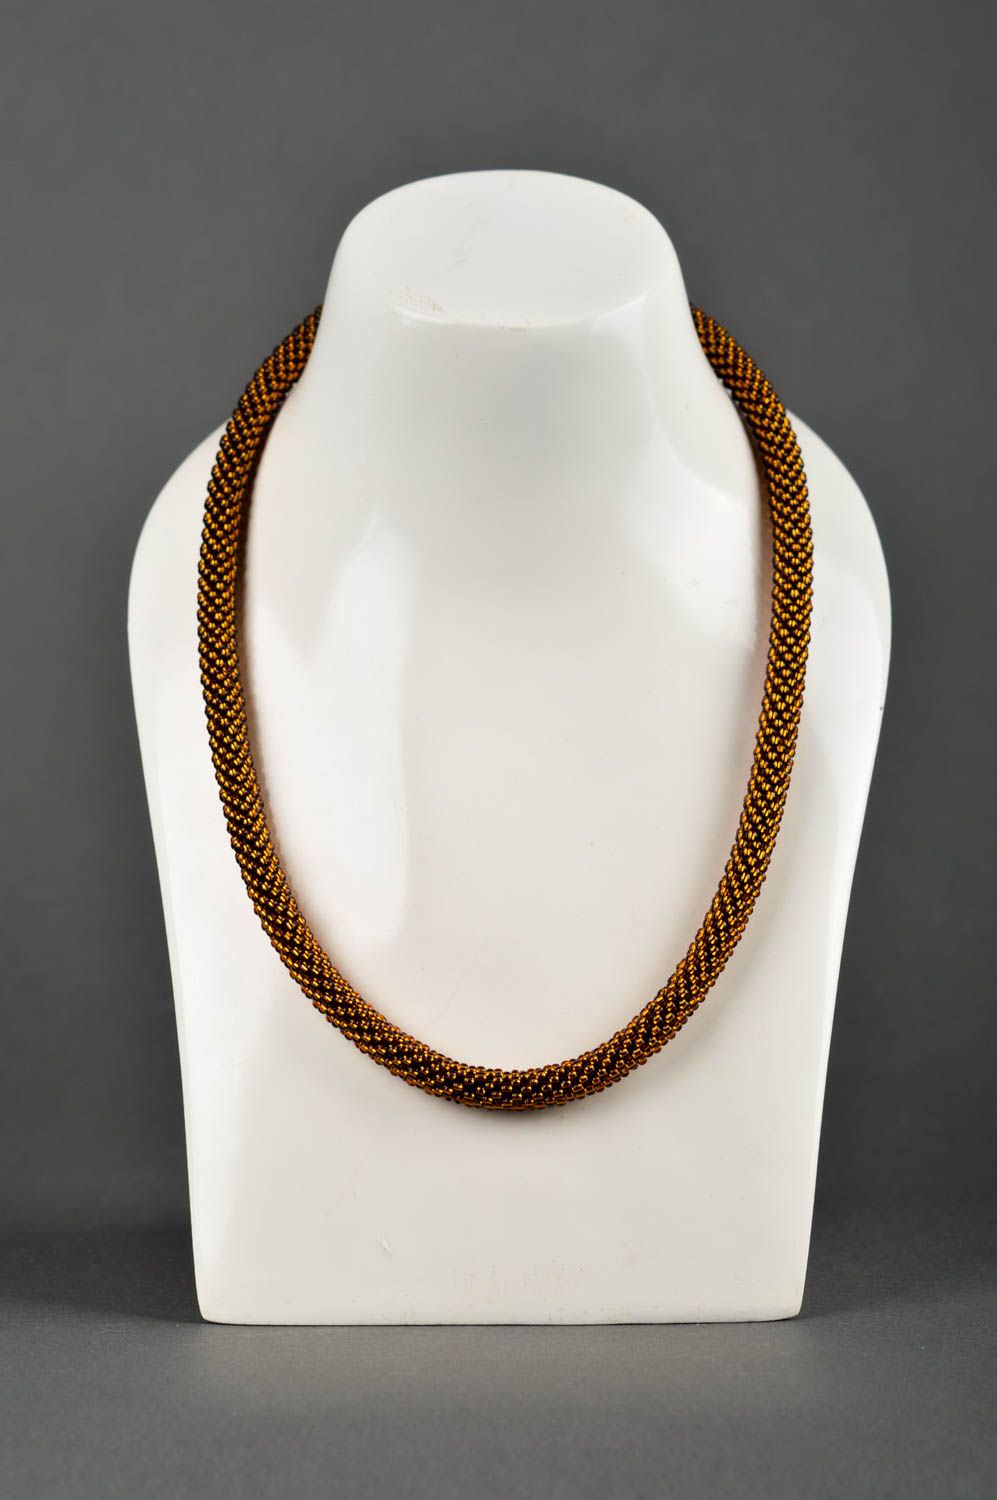 Handmade designer beaded necklace stylish cord necklace elegant jewelry photo 1